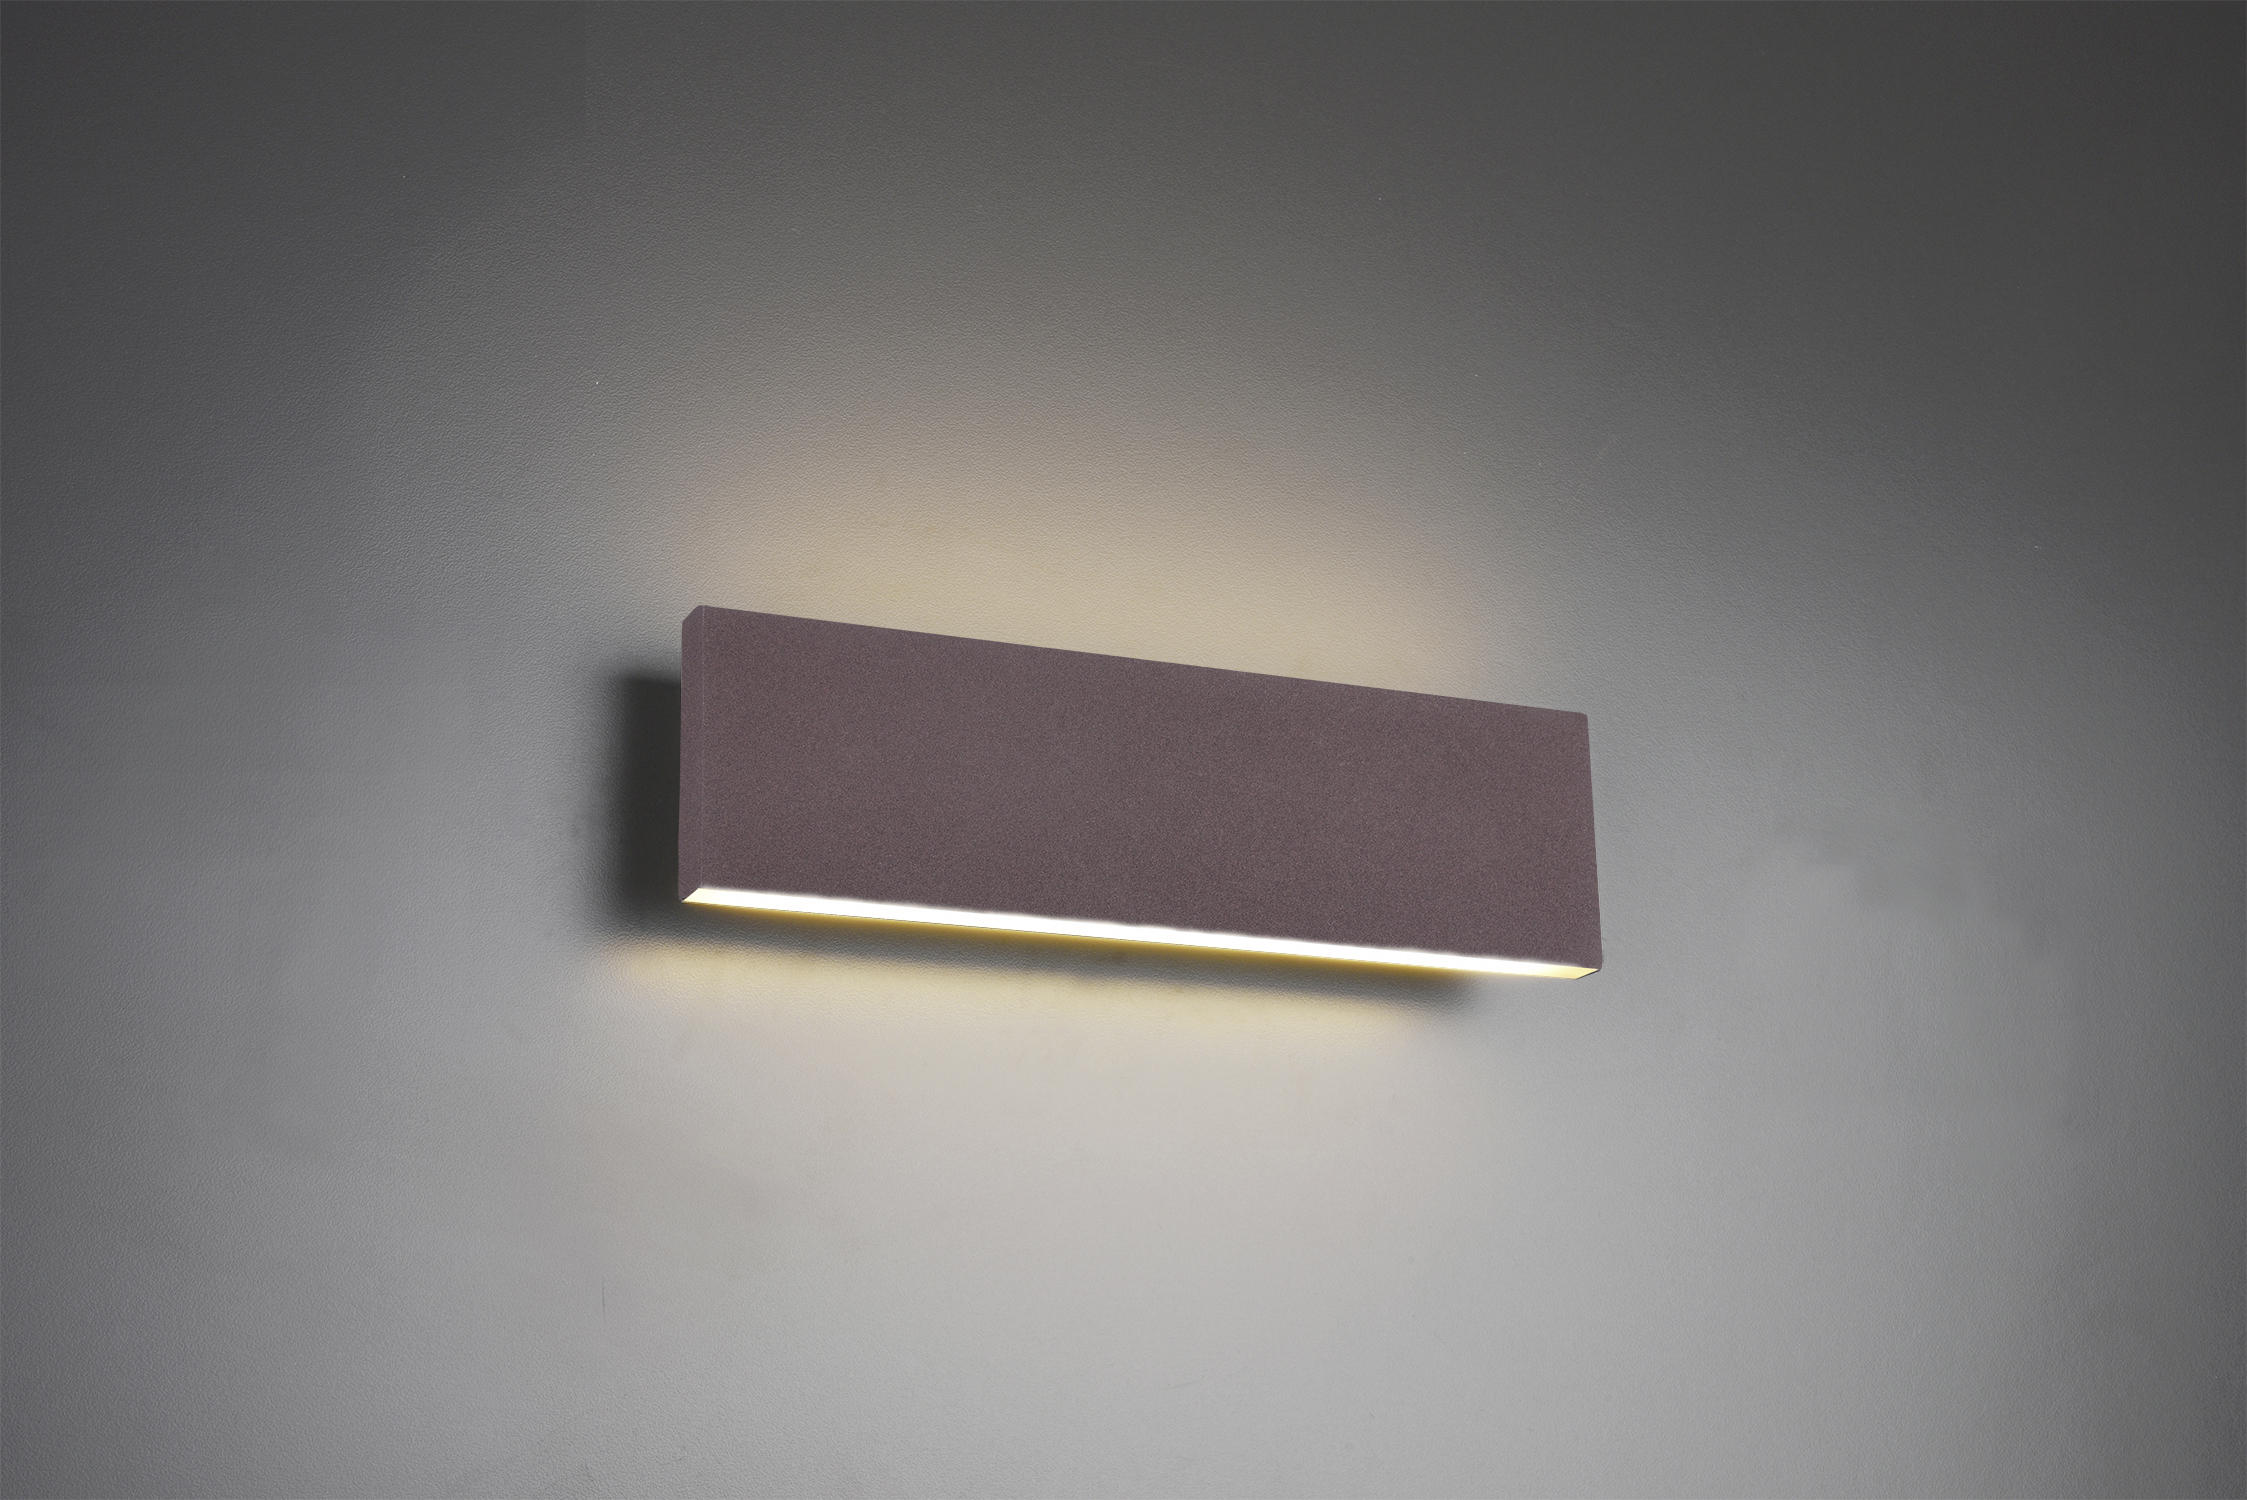 Wandlampe Wandleuchte Keramik Lampe Rechteck Braun 1500 für LEDs Beleuchtung 